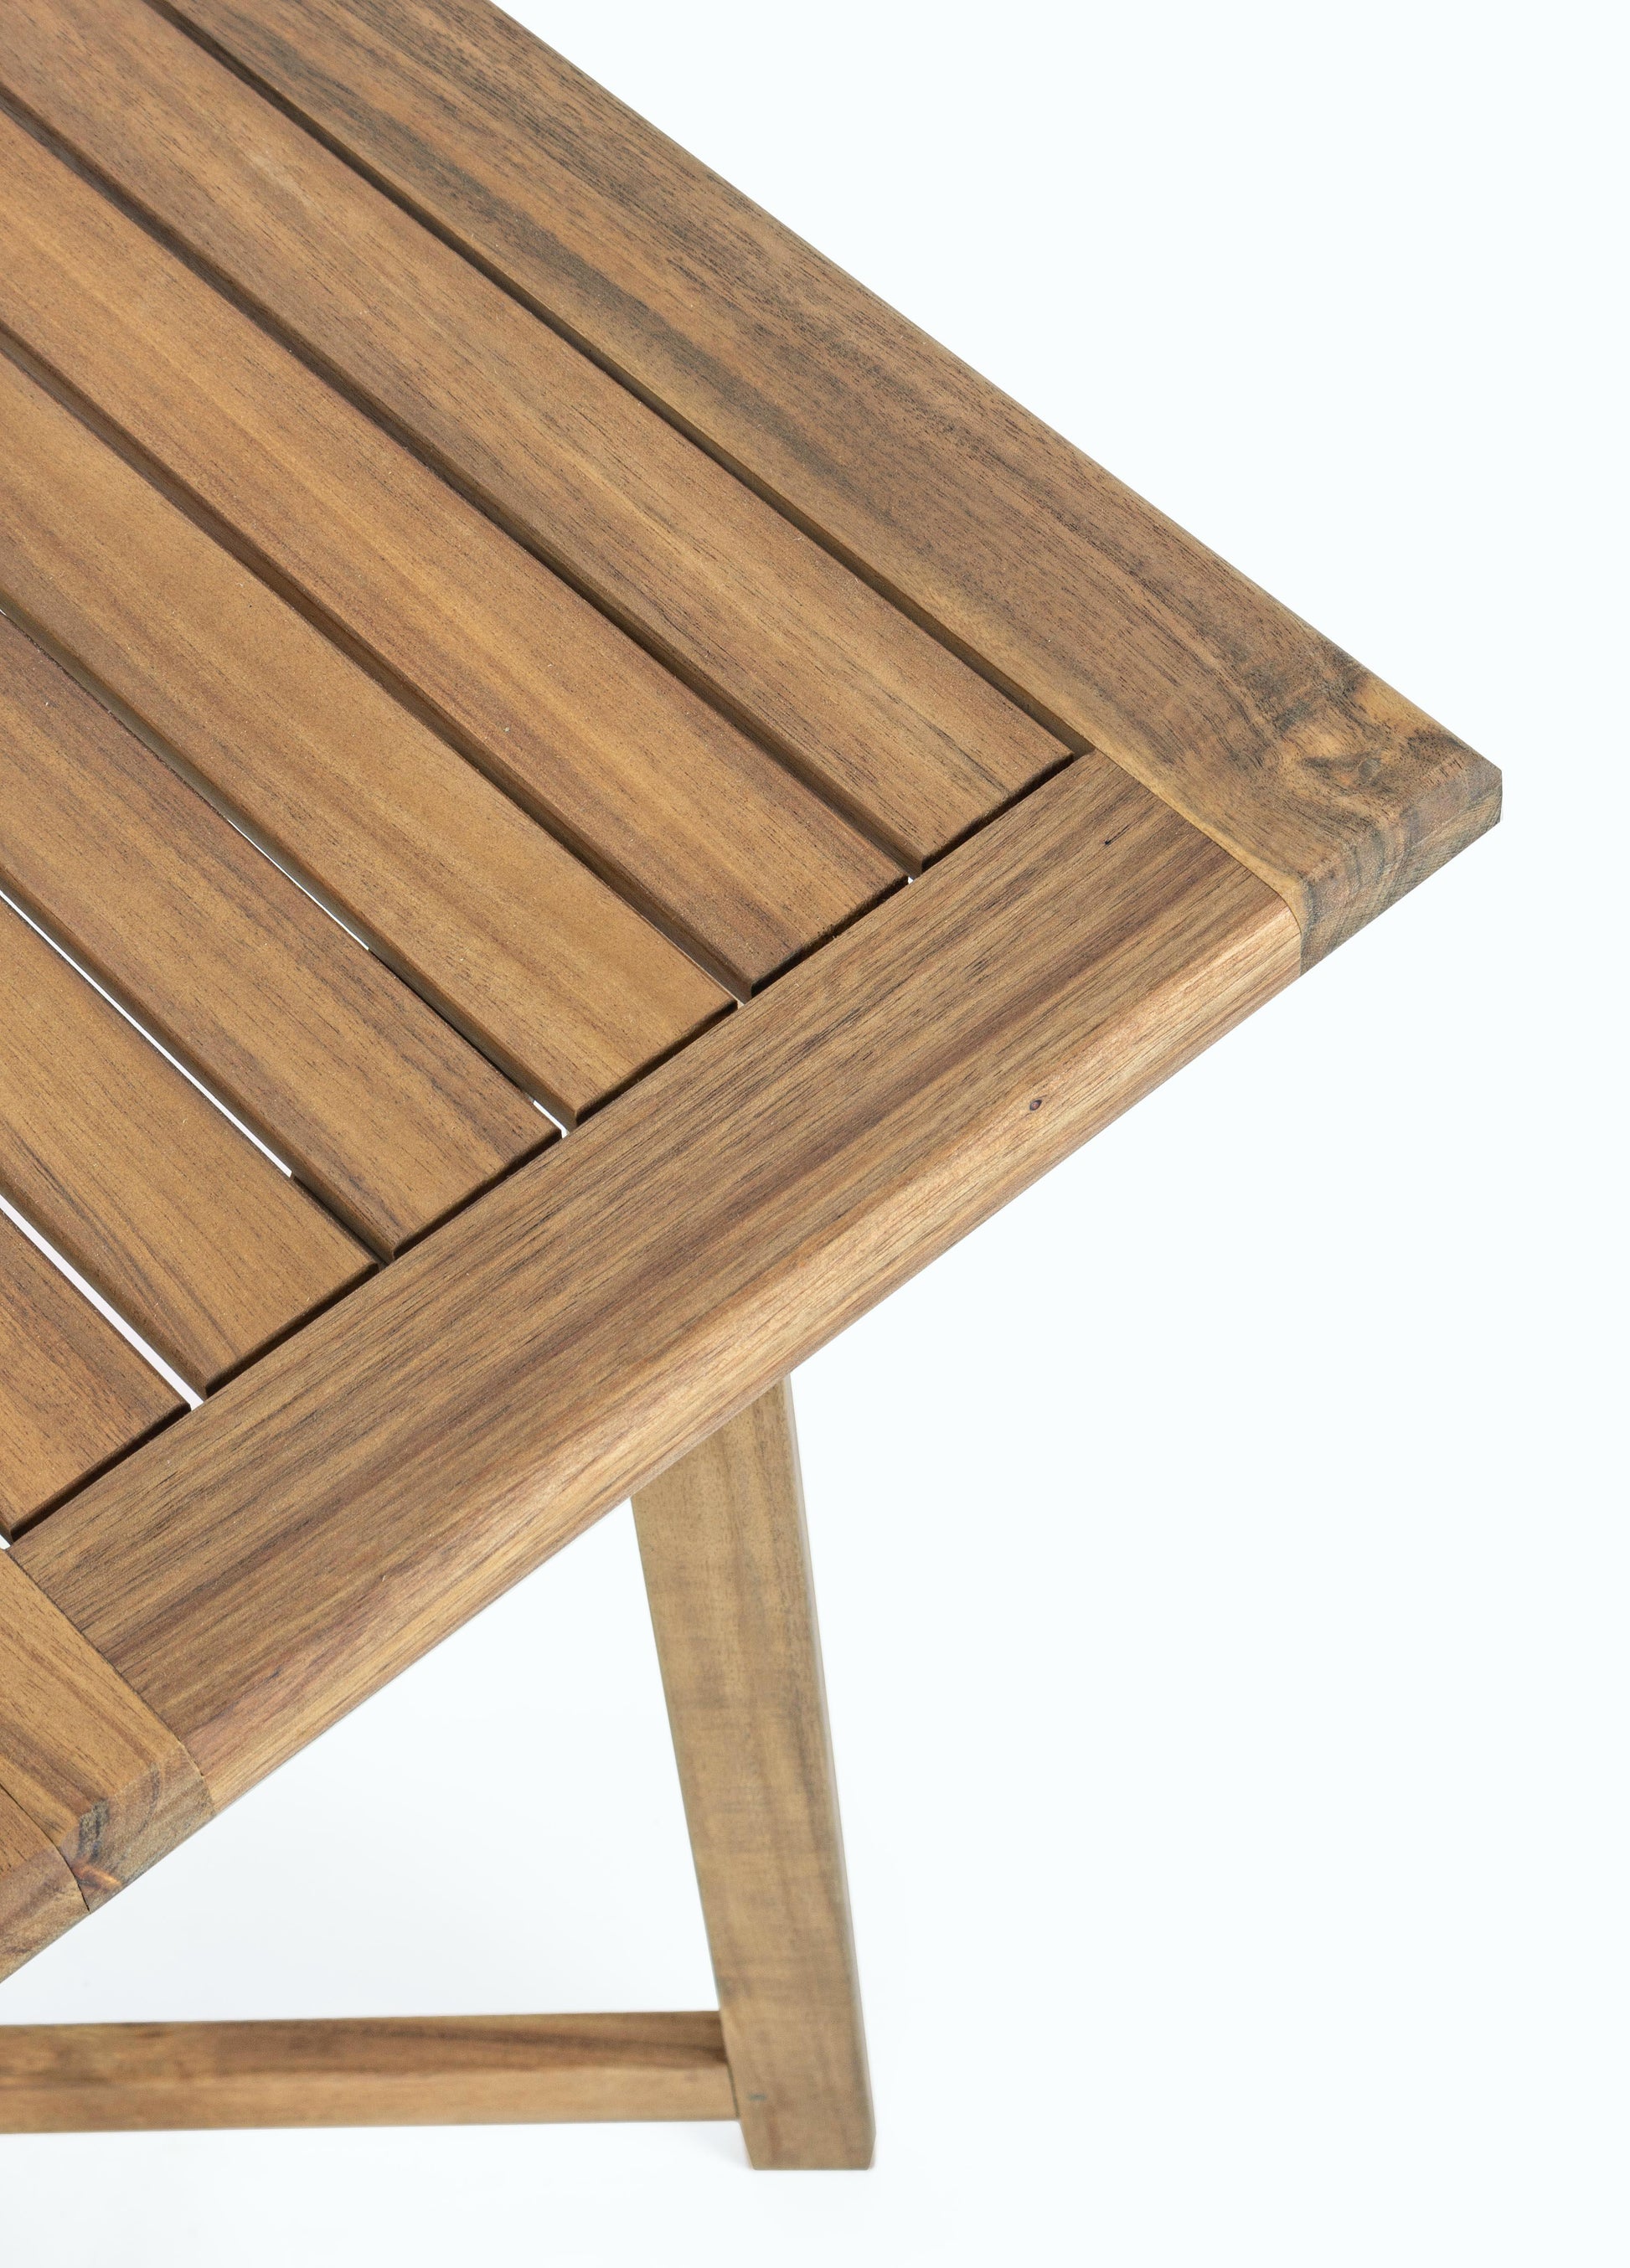 Set pieghevole tavolino e 4 sedie in legno massello - lapagoda.net